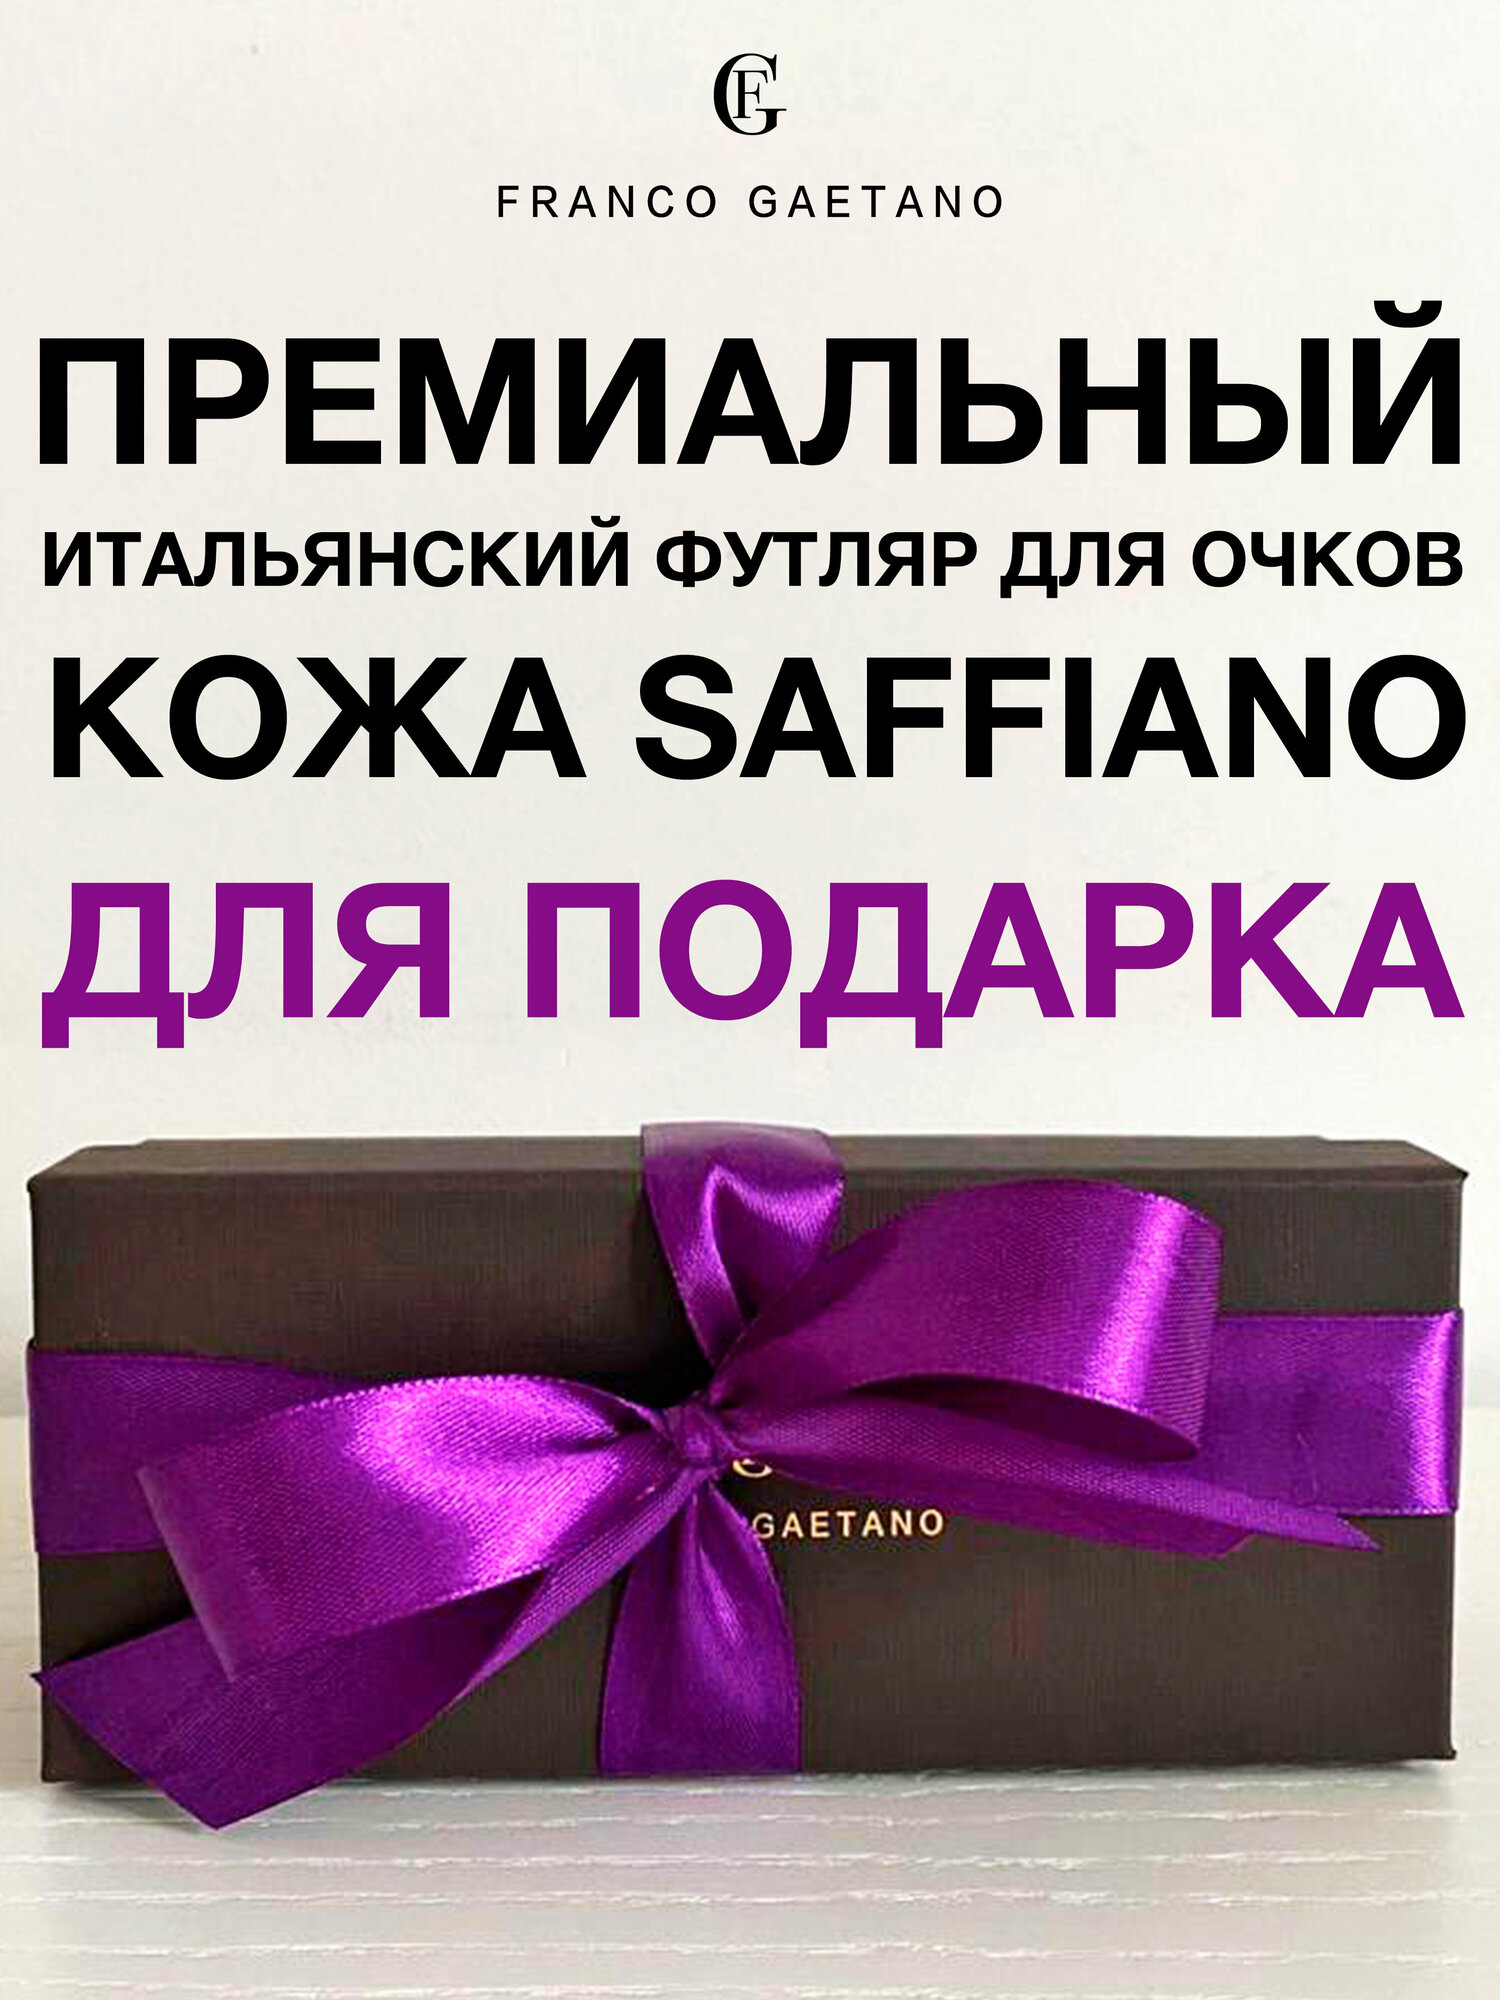 Футляр для очков FG для подарка премиальное качество, кожа Saffiano и бархат, мягкая салфетка из микрофибры, подарочная коробка, темно-фиолетовая лента.